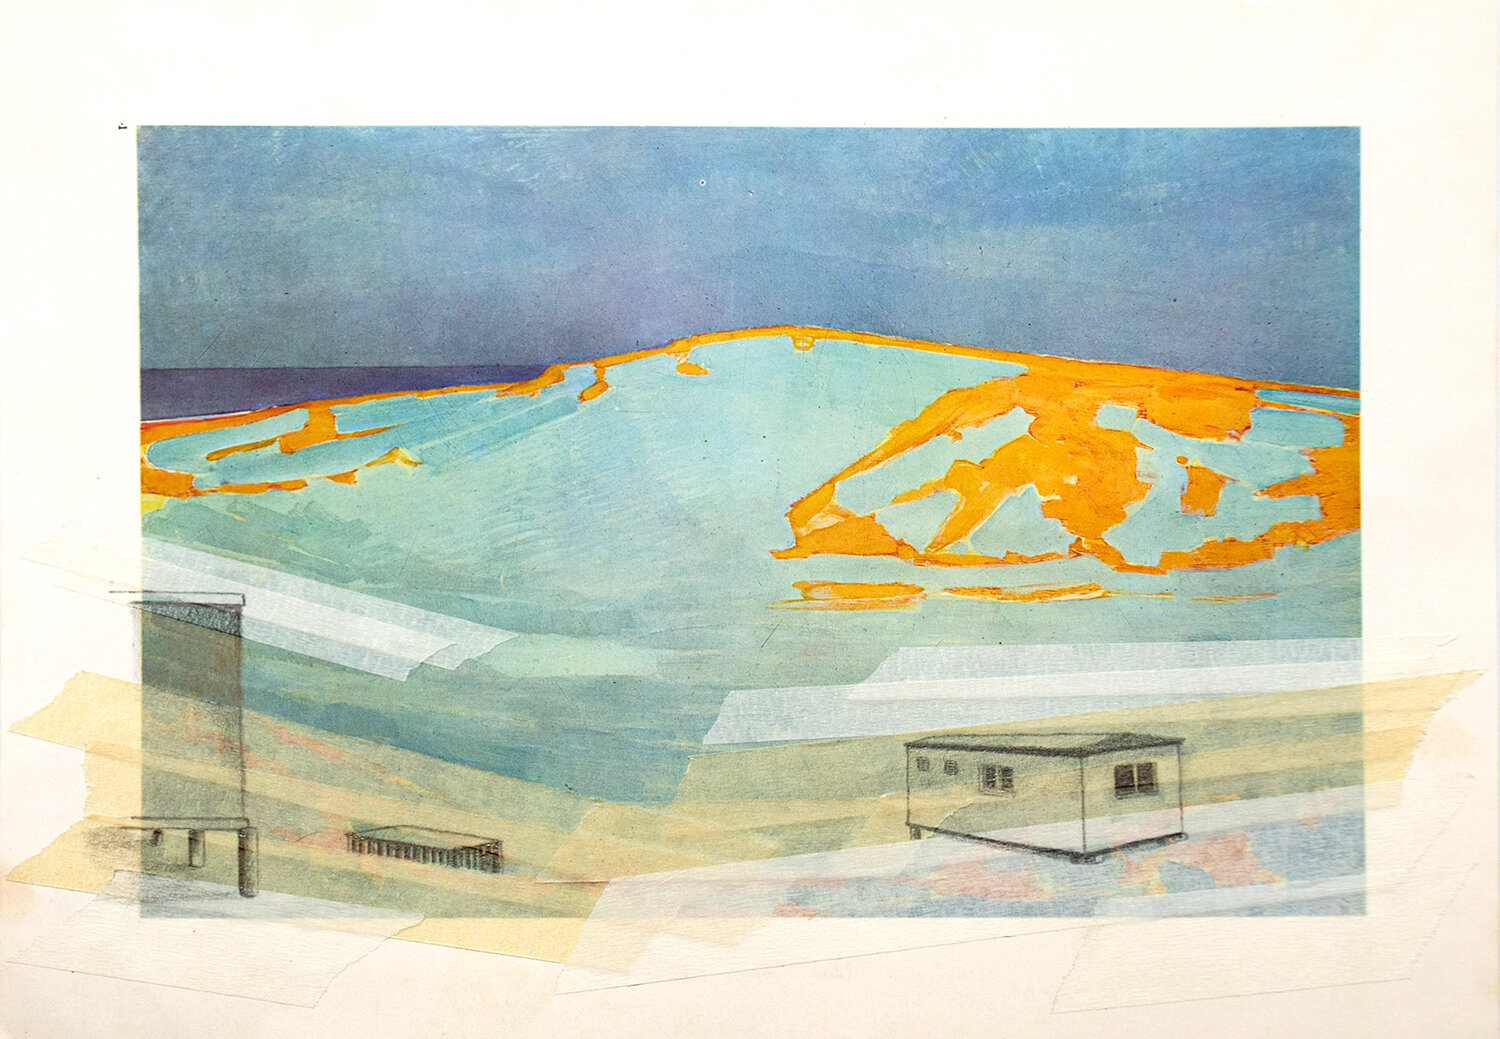 גאולת דיונות החול של מונדריאן (1910), עיפרון ומסקינגטייפ על הדפסה דיגיטאלית, 2013